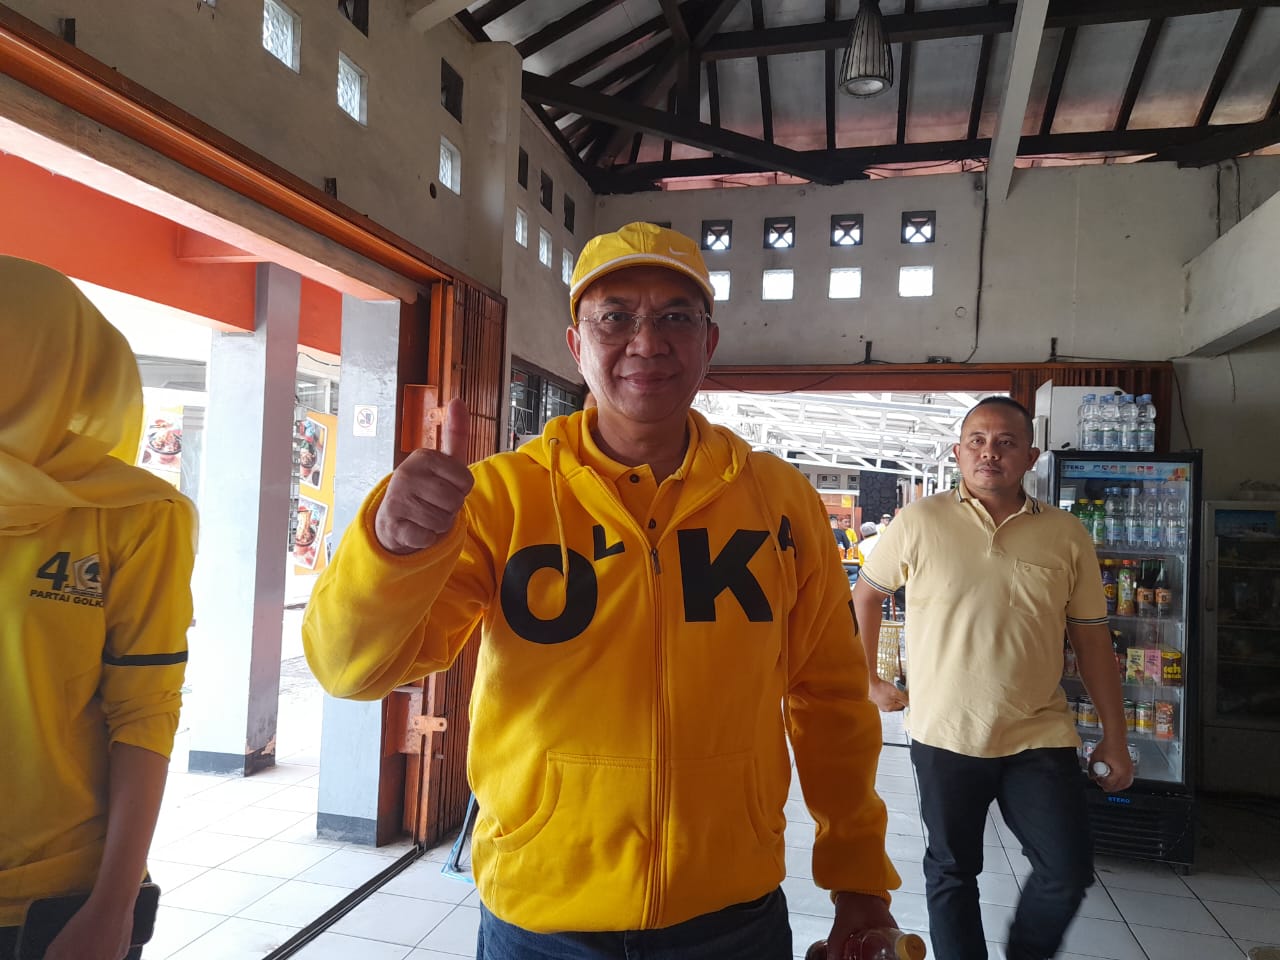 Mantan Wakil Walikota Sukabumi Andri Hamami yang juga disebut sebagai Calon Anggota Legislatif (Caleg) untuk DPR RI dari Partai Golkar merasa yakin bahwa partai Golkar